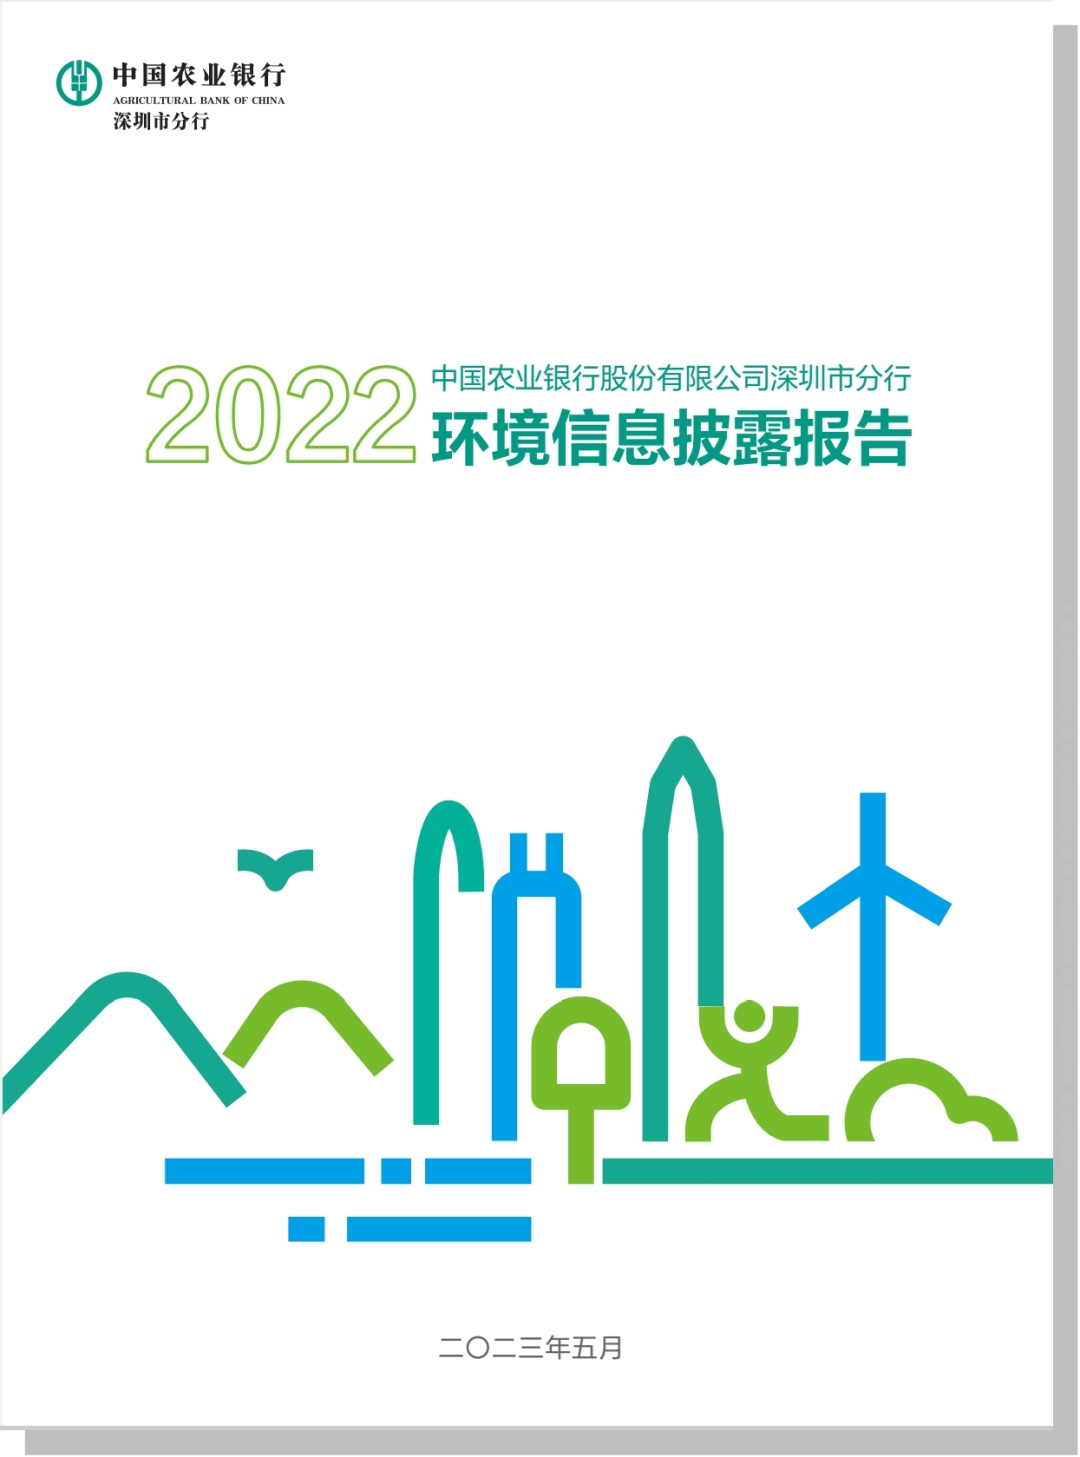 农行深圳分行发布《2022年度环境信息披露报告》